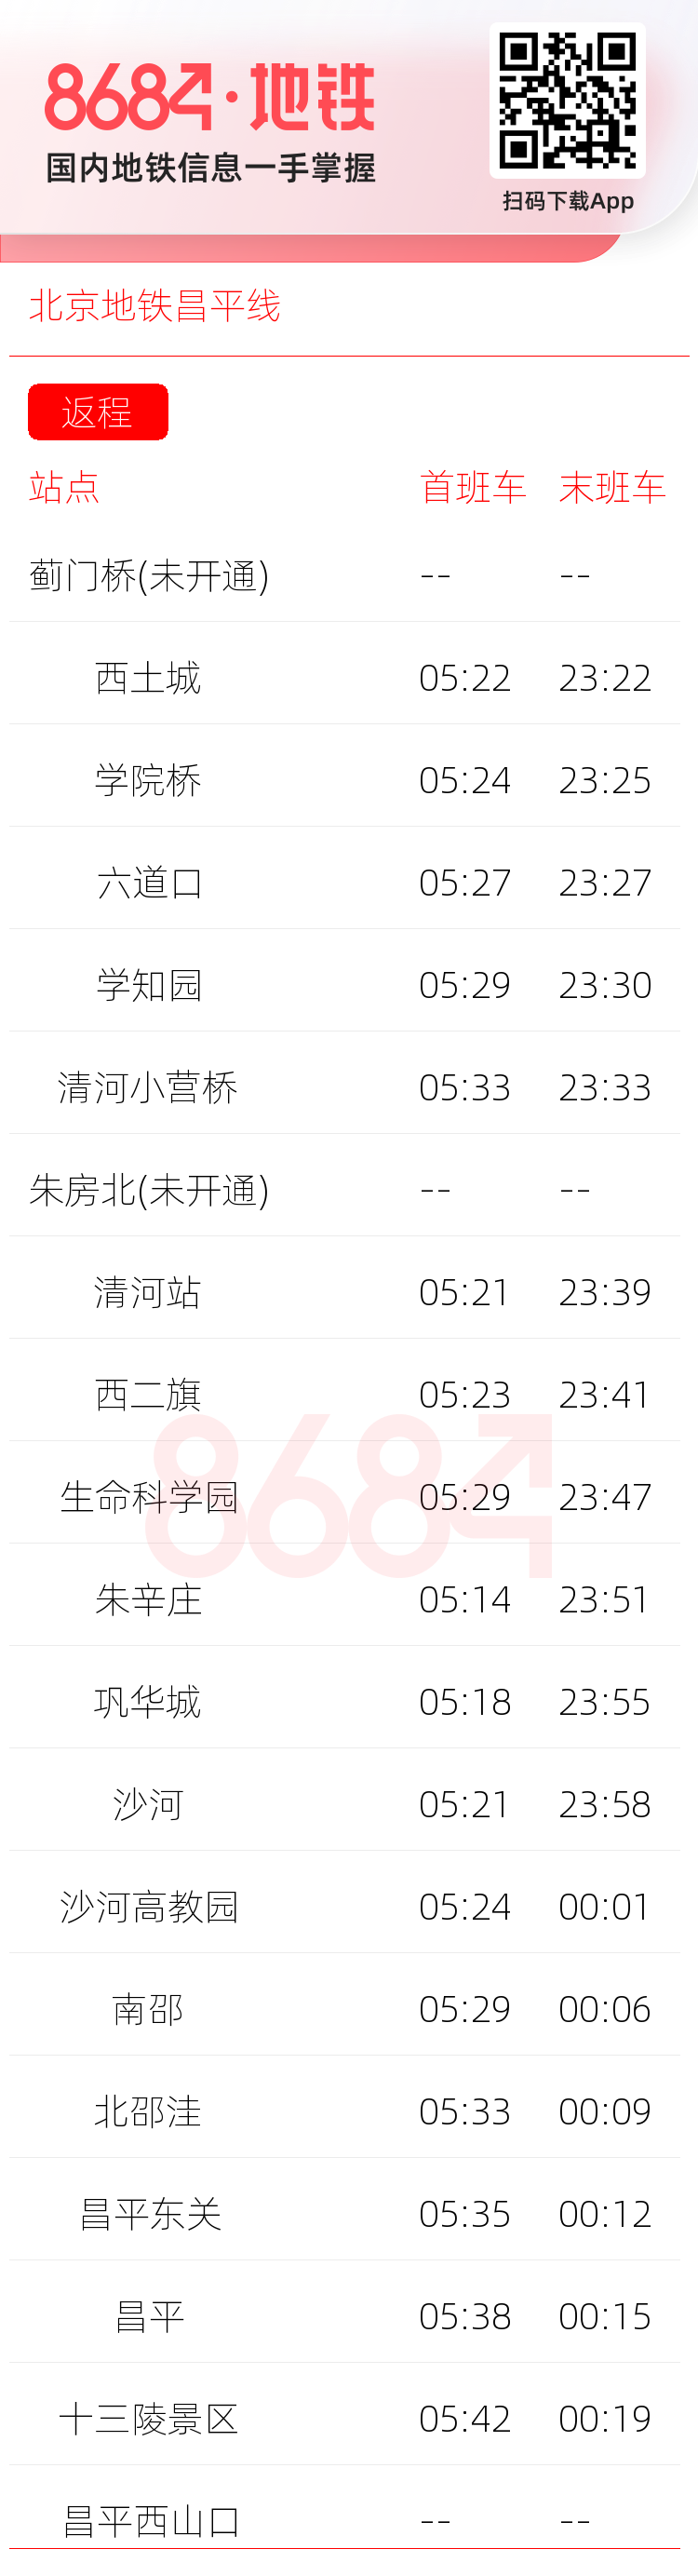 北京地铁昌平线运营时间表